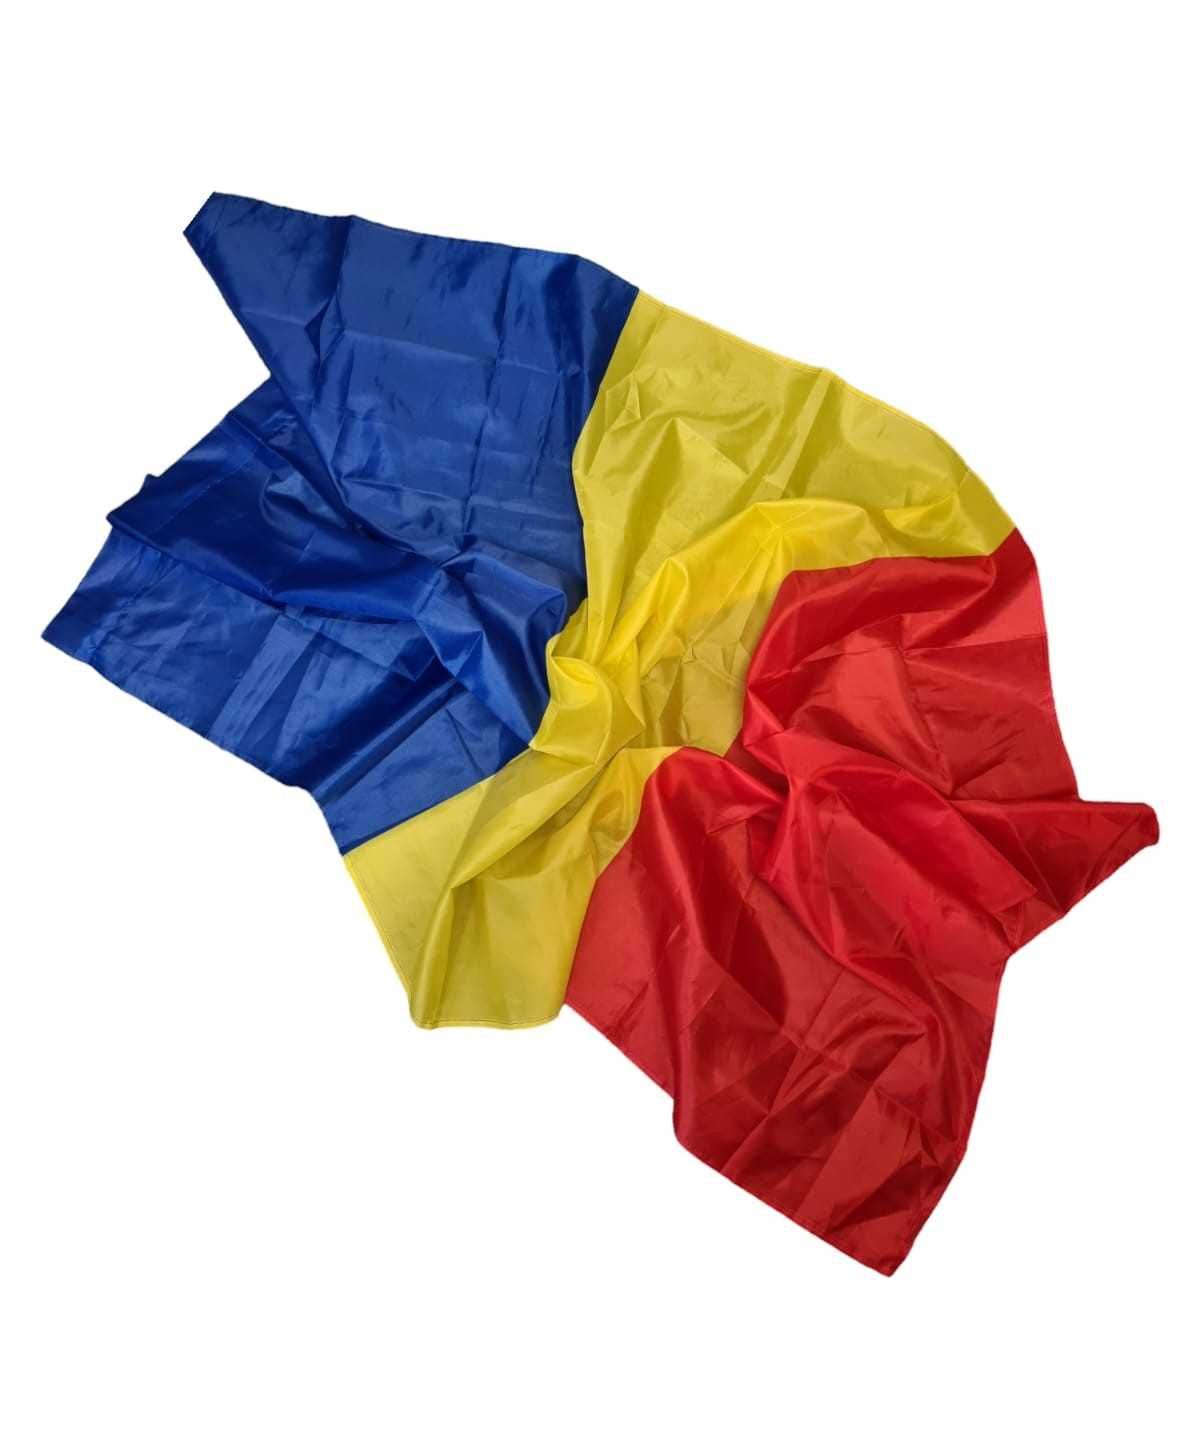 Steag Romania / Drapel tricolor nylon 60 g / m2, 135 cm x 90 cm